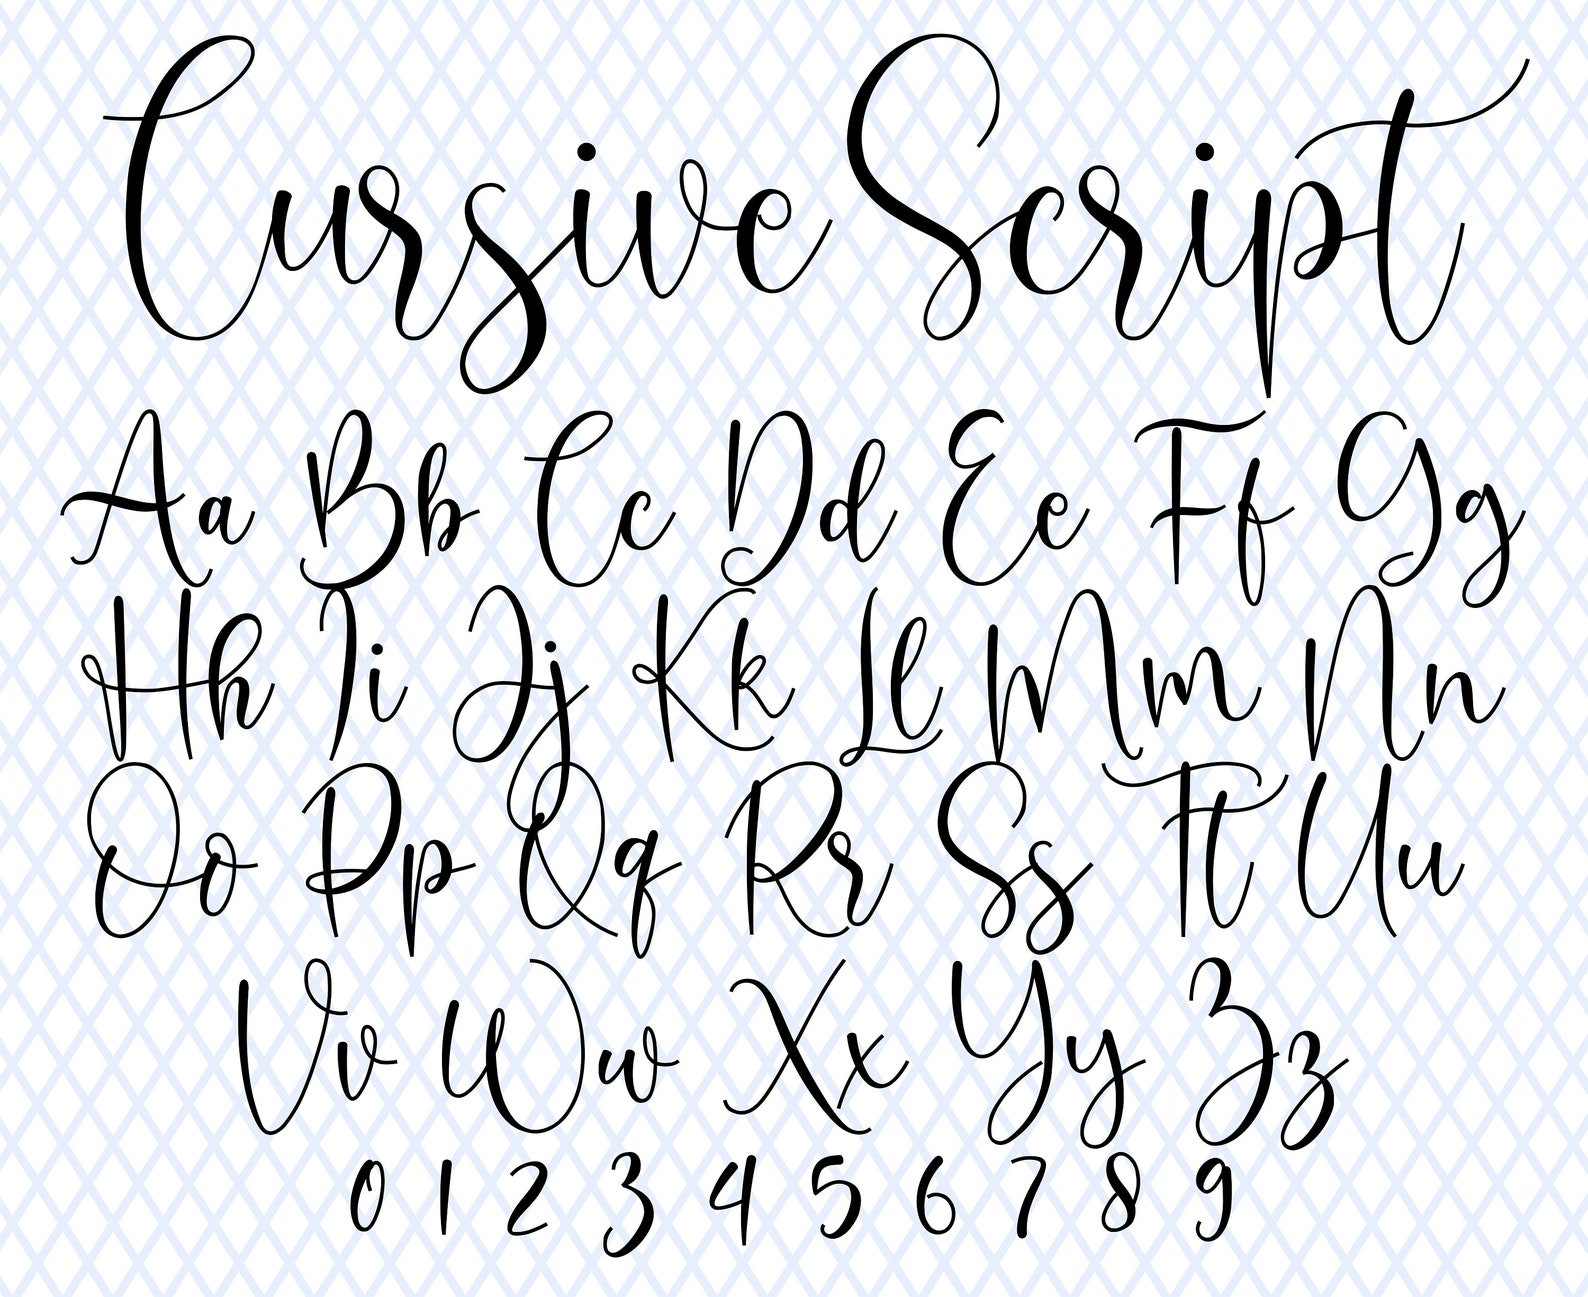 Cursive Font Wedding Font Cursive Letters Font Invite Font - Etsy